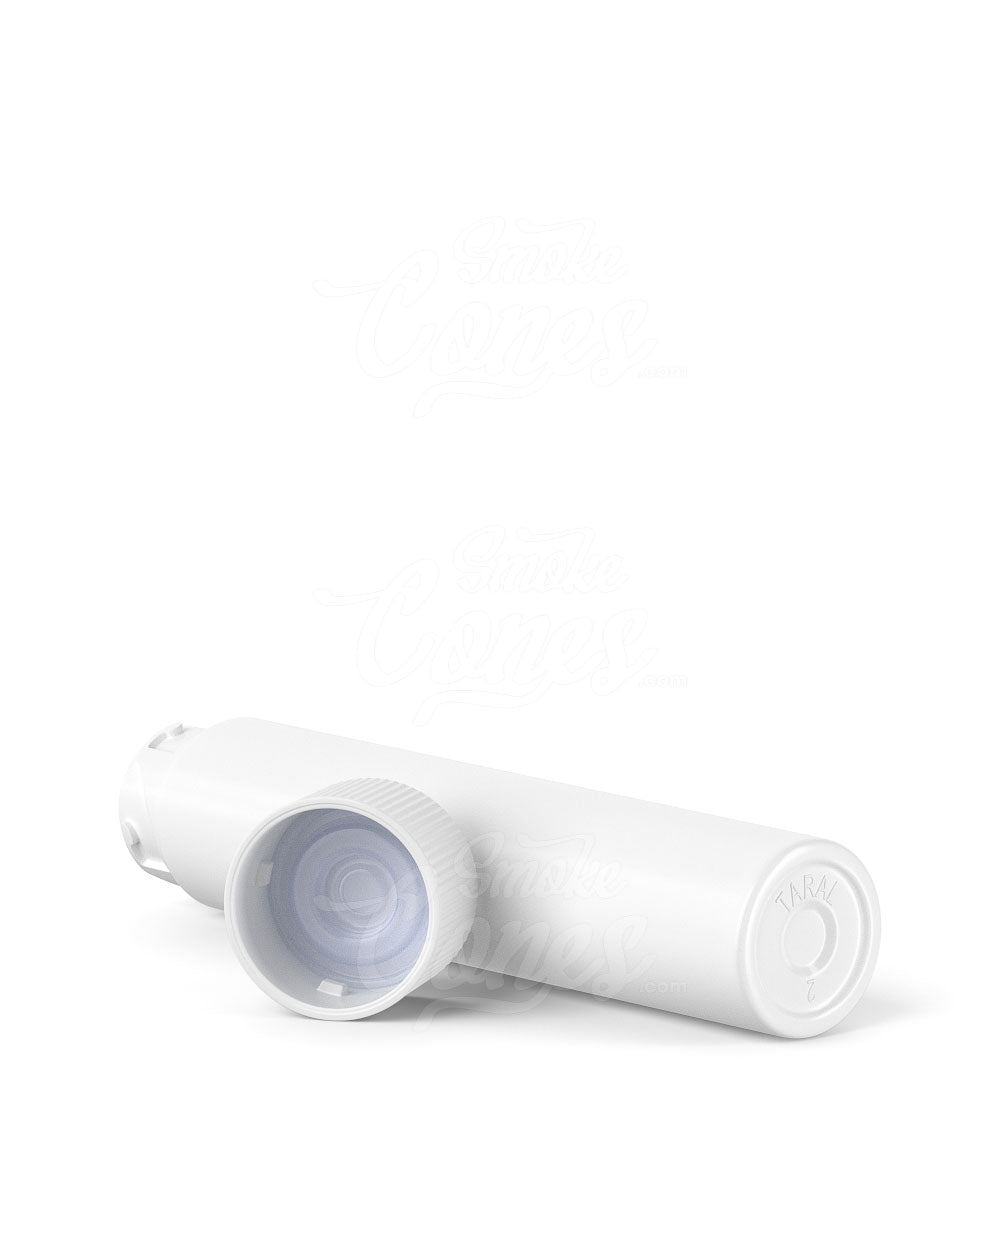 72mm Child Resistant Push Down & Turn Plastic Vape Cartridge Tube - White - 1650/Box